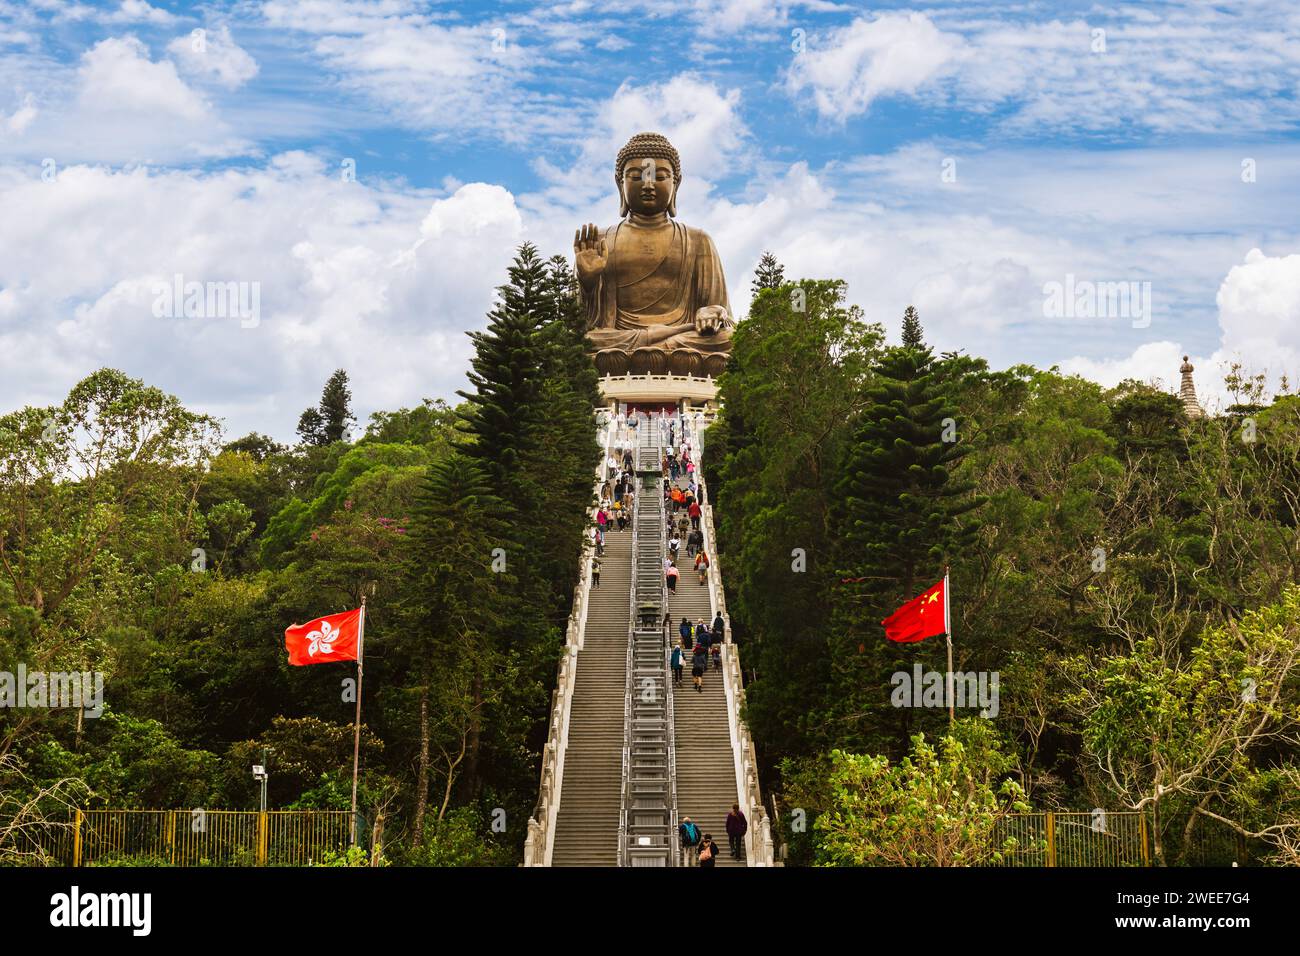 Le Grand Bouddha situé à Ngong Ping, île de Lantau, à Hong Kong. Banque D'Images